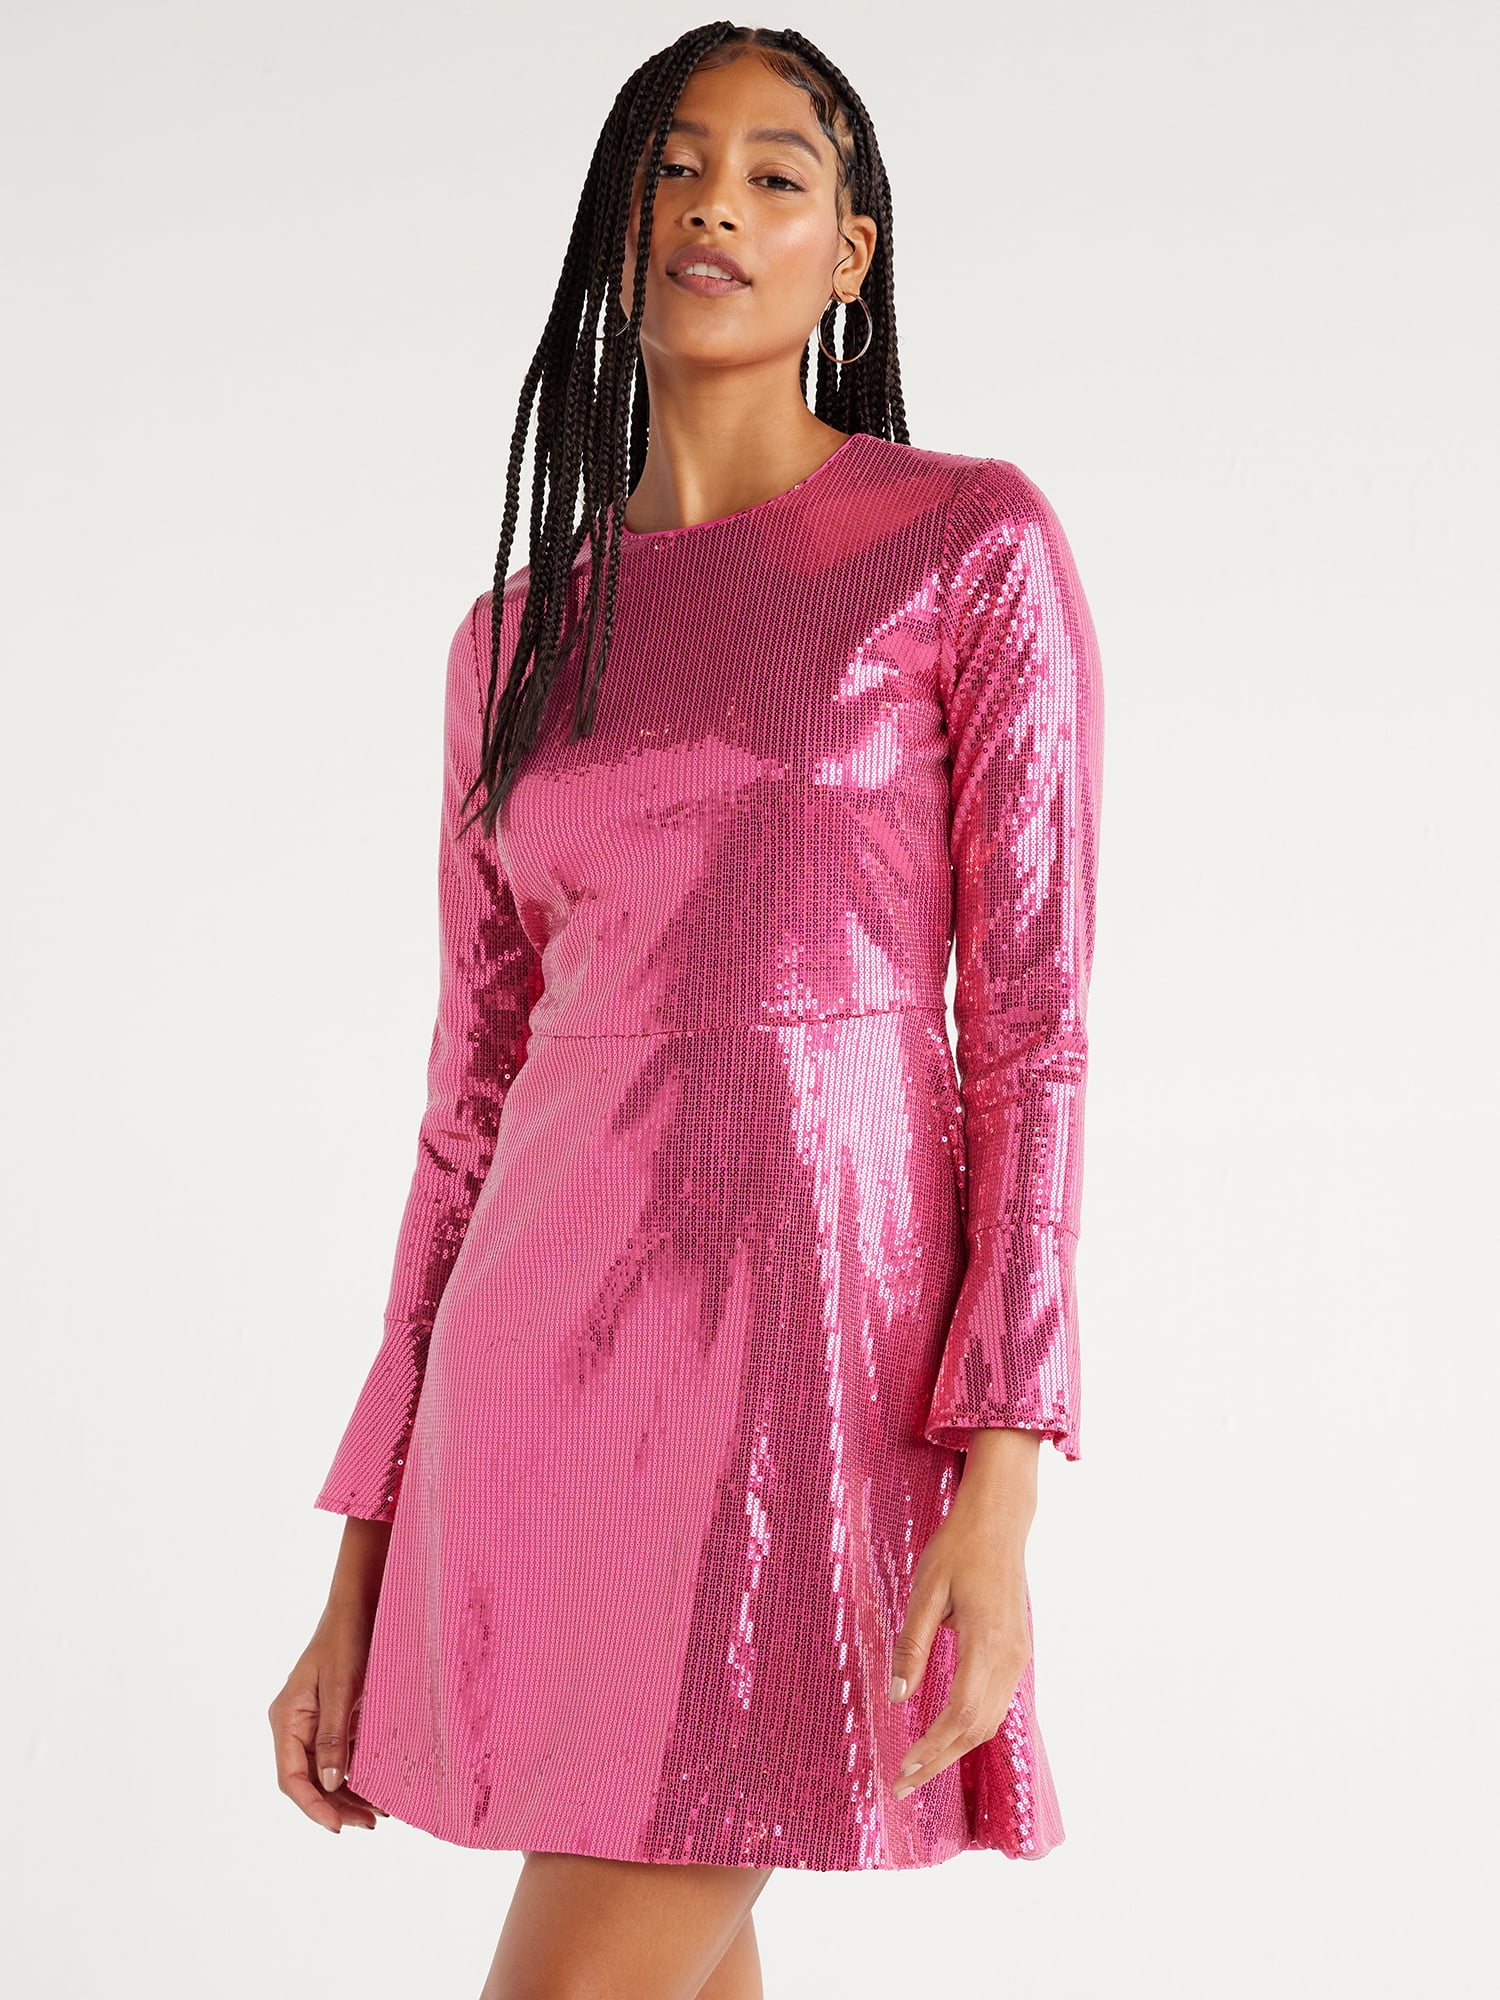 Scoop Women’s Sequin Dress with Slit Sleeves, Sizes XS-XXL - Walmart.com